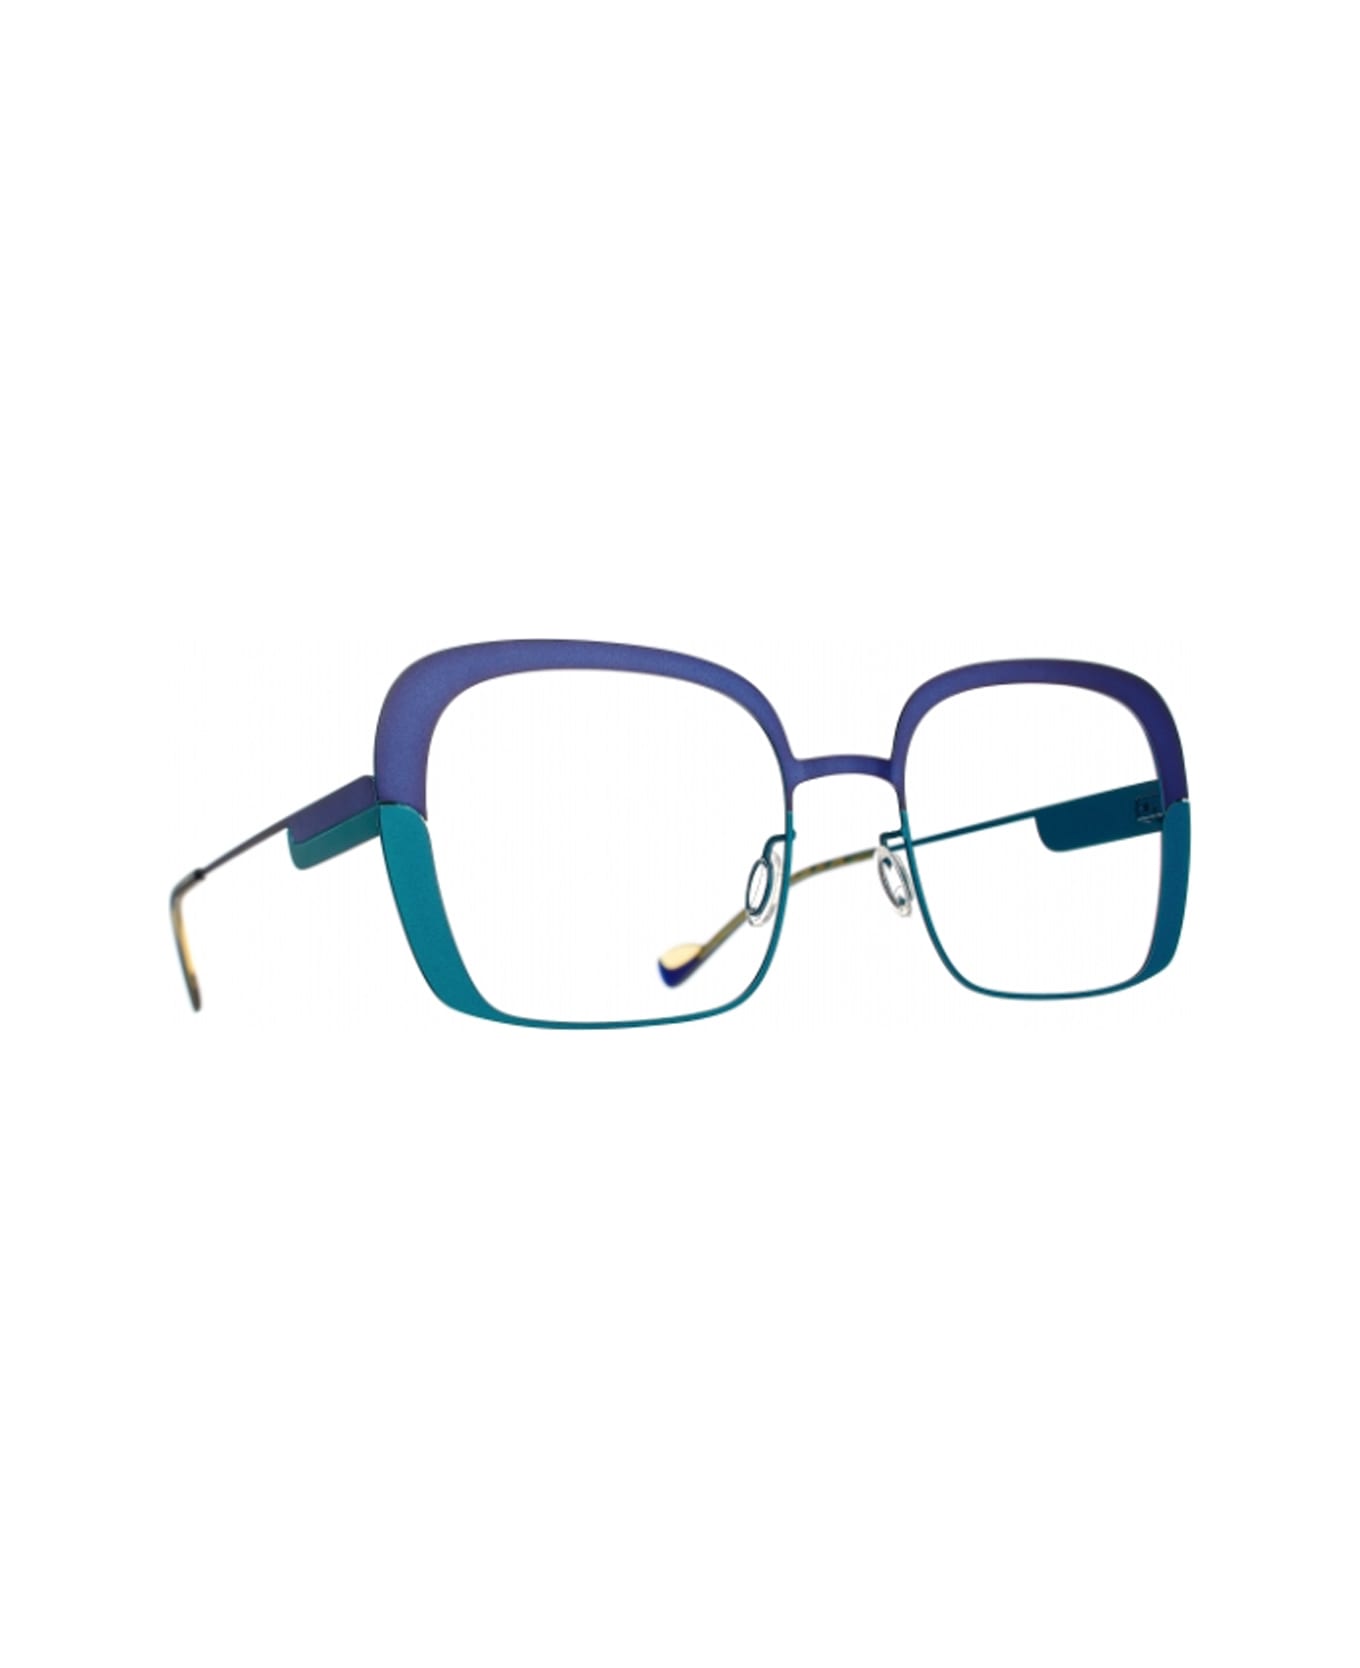 Caroline Abram Jane 257 Glasses - Verde アイウェア